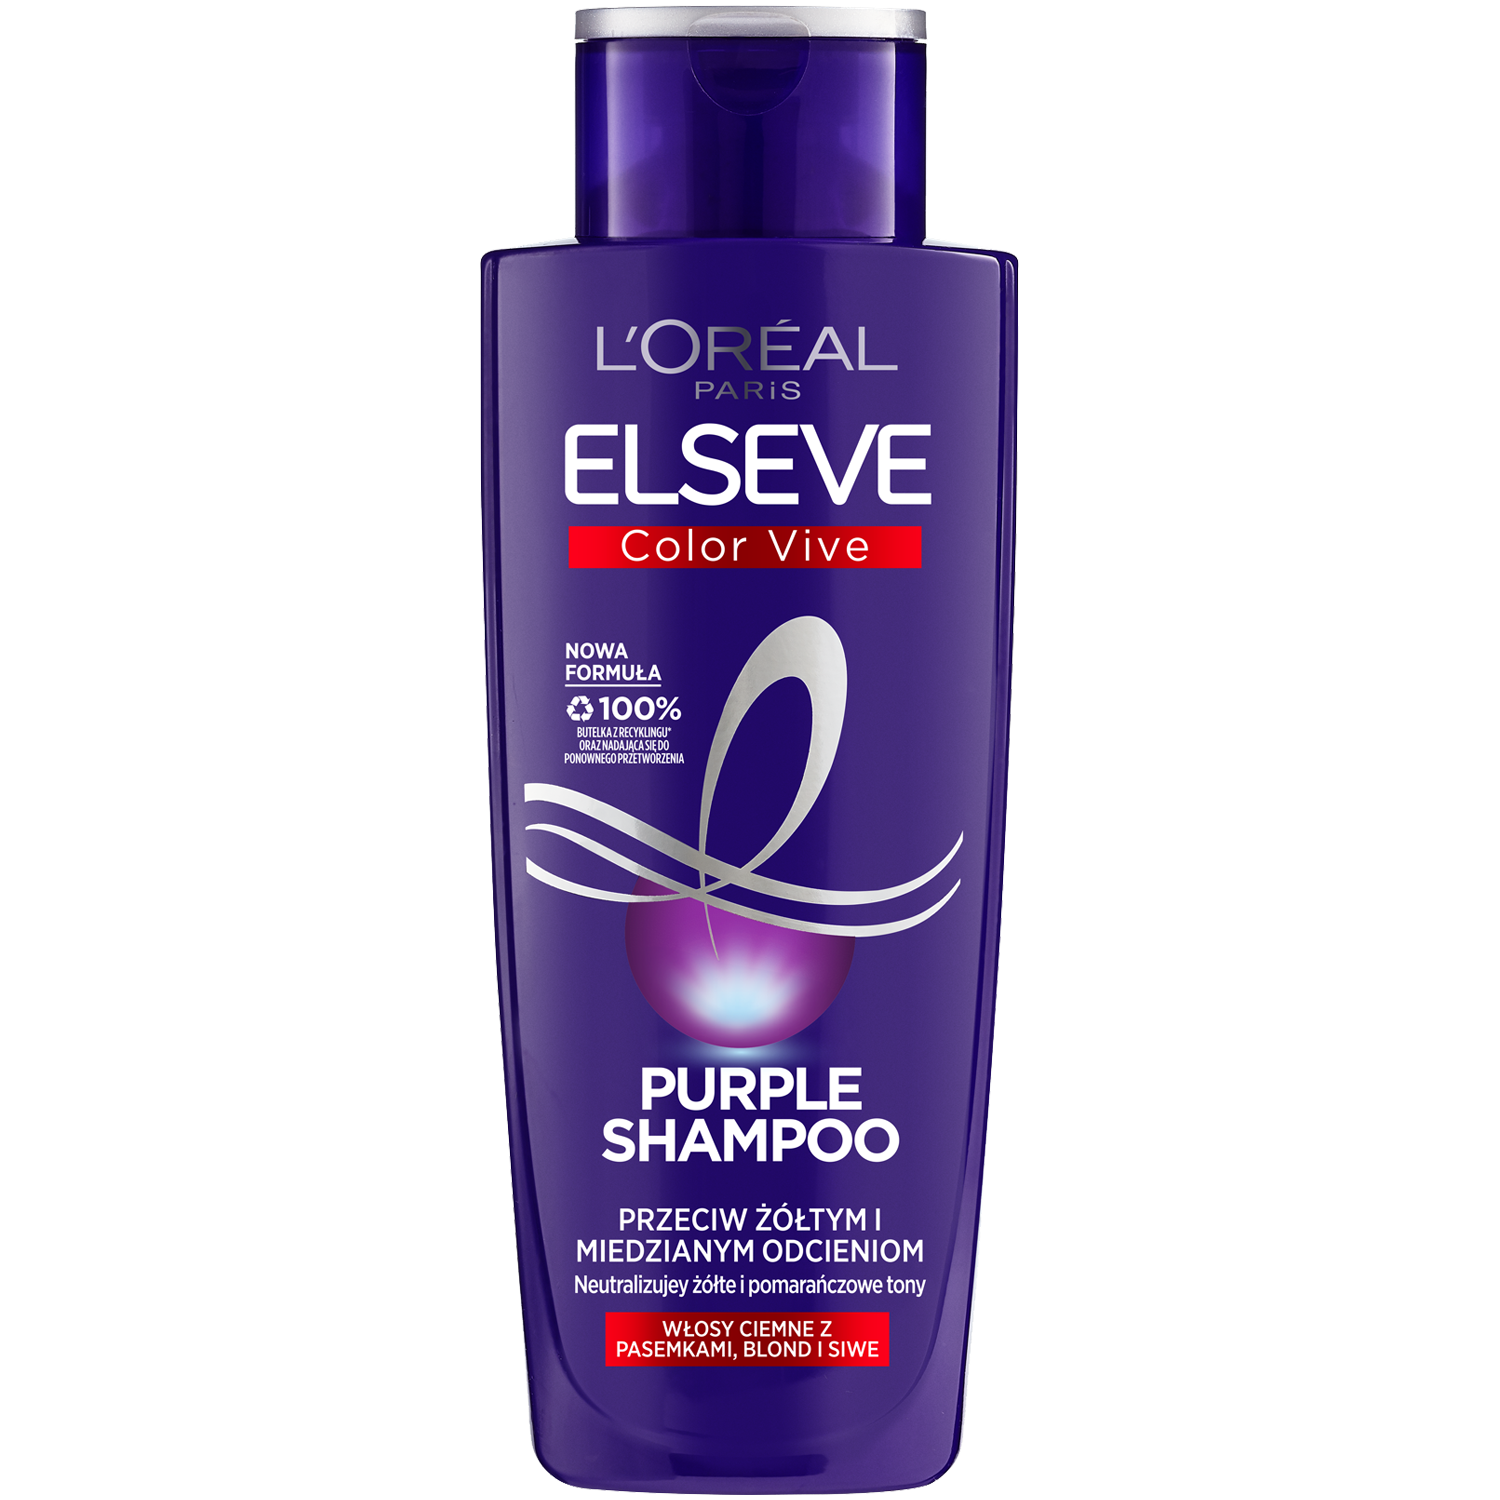 szampon do wlosow fioletowy